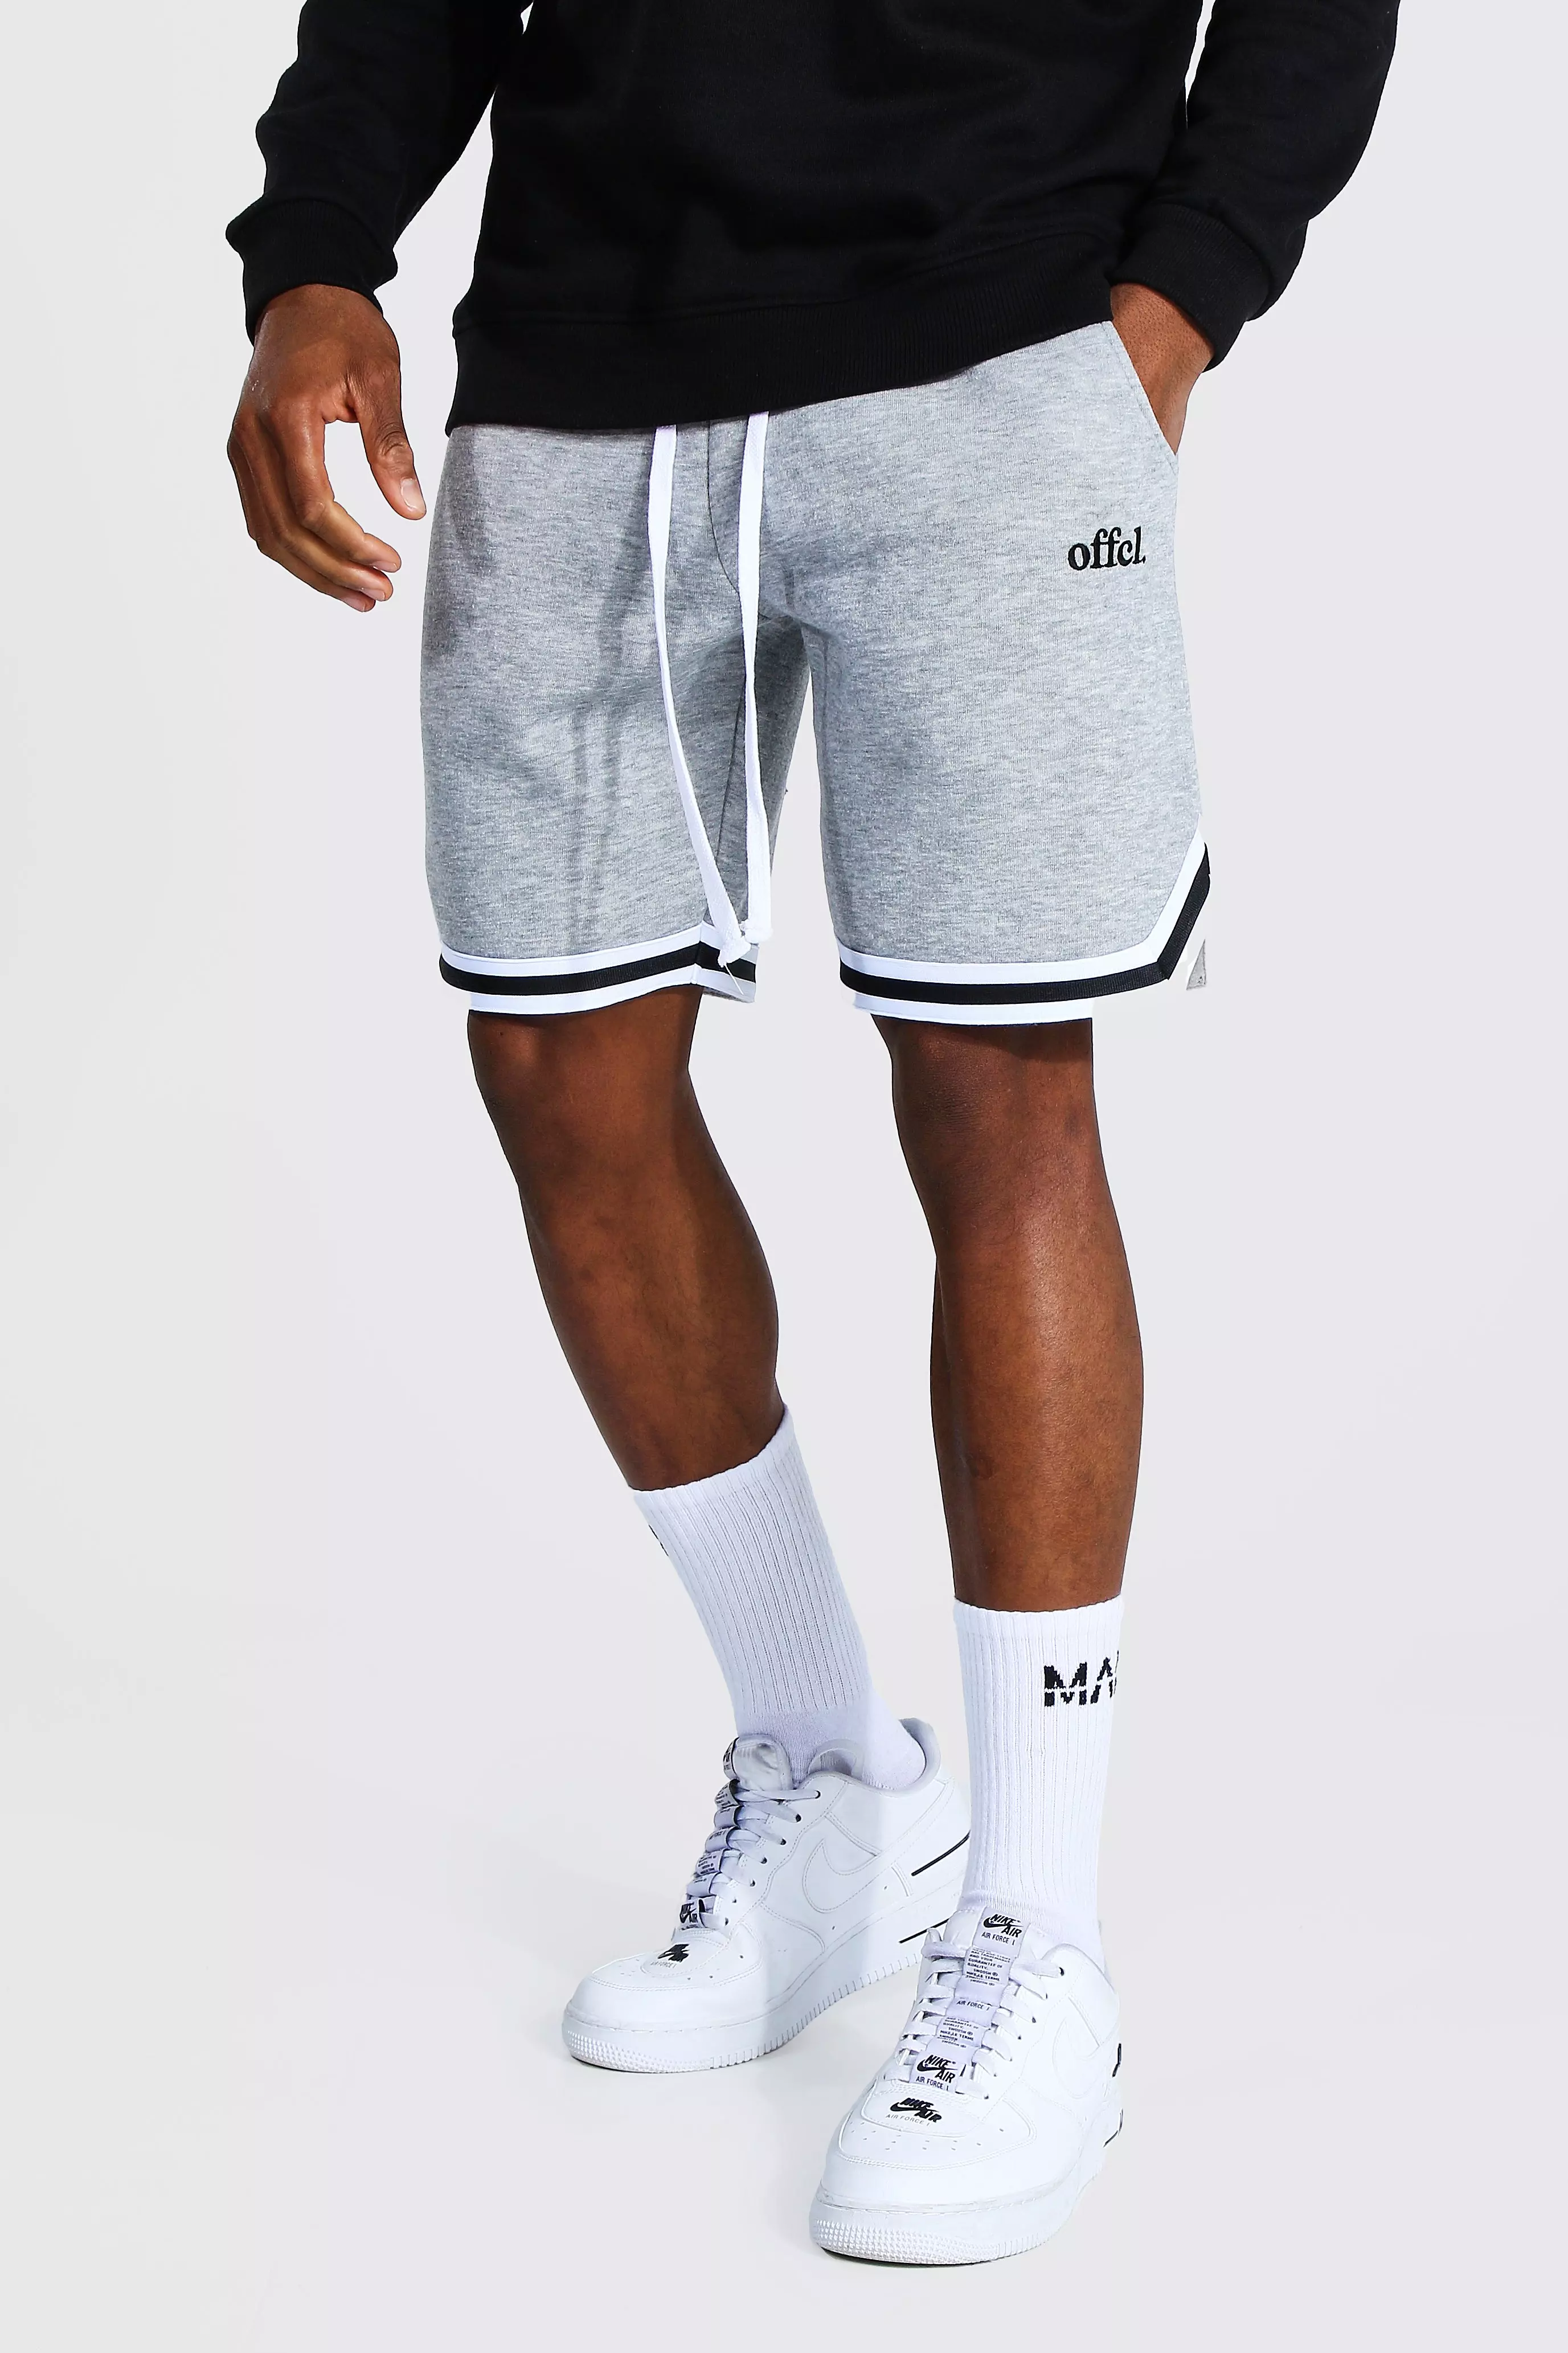 Men's Basketball Jersey Shorts - POD by Merchiful